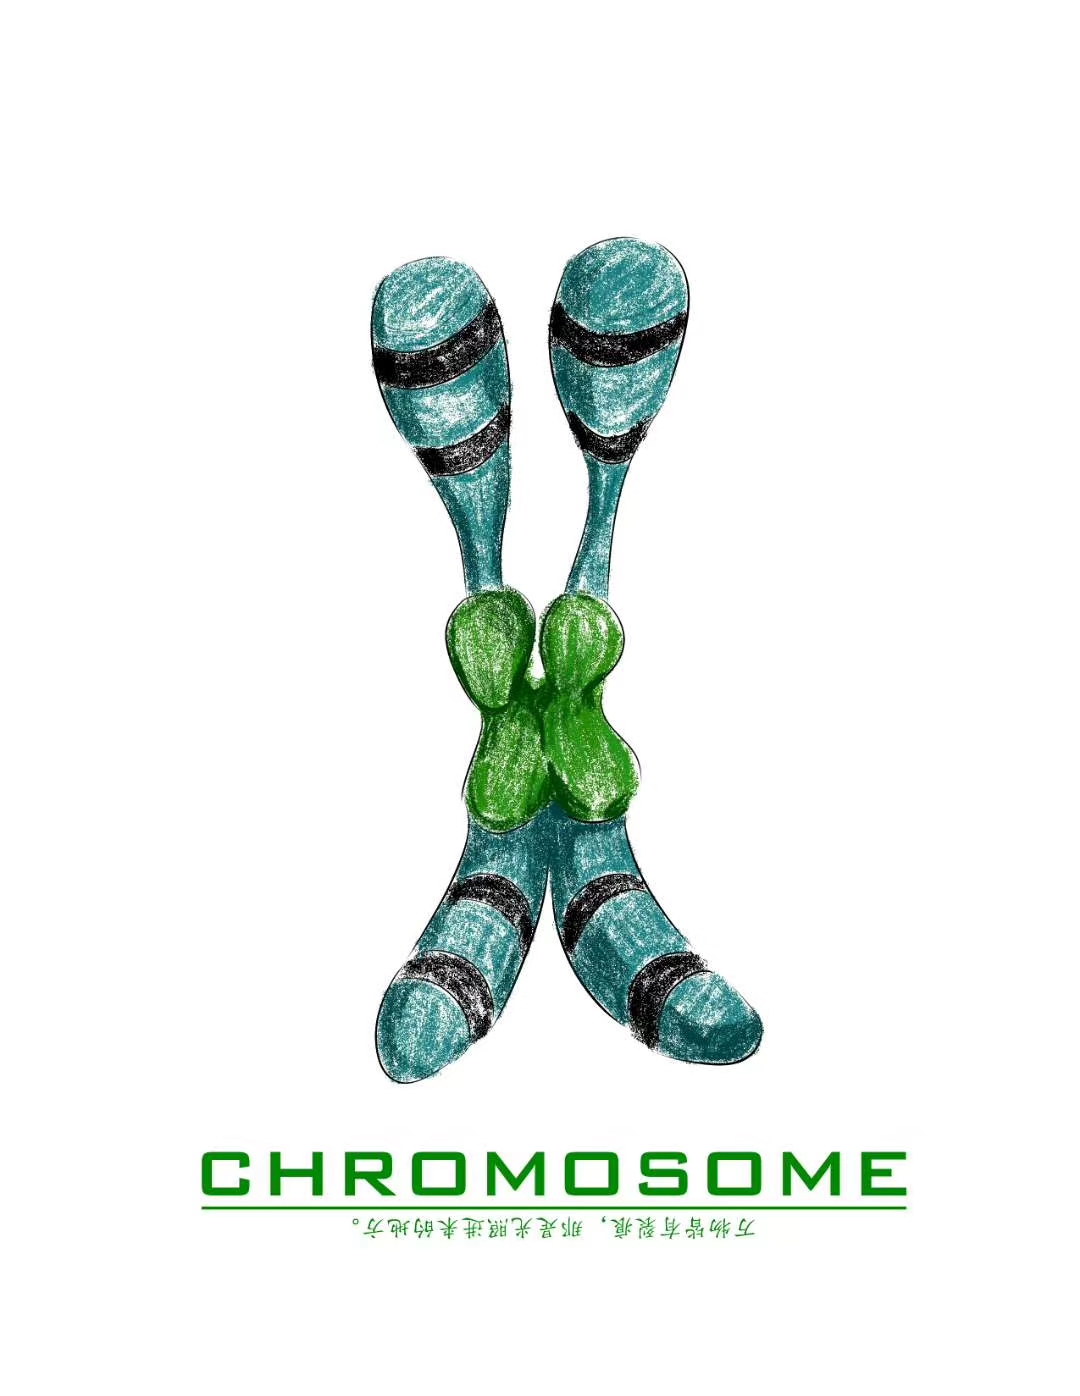 23对染色体分别对应的是哪些症状? - 知乎